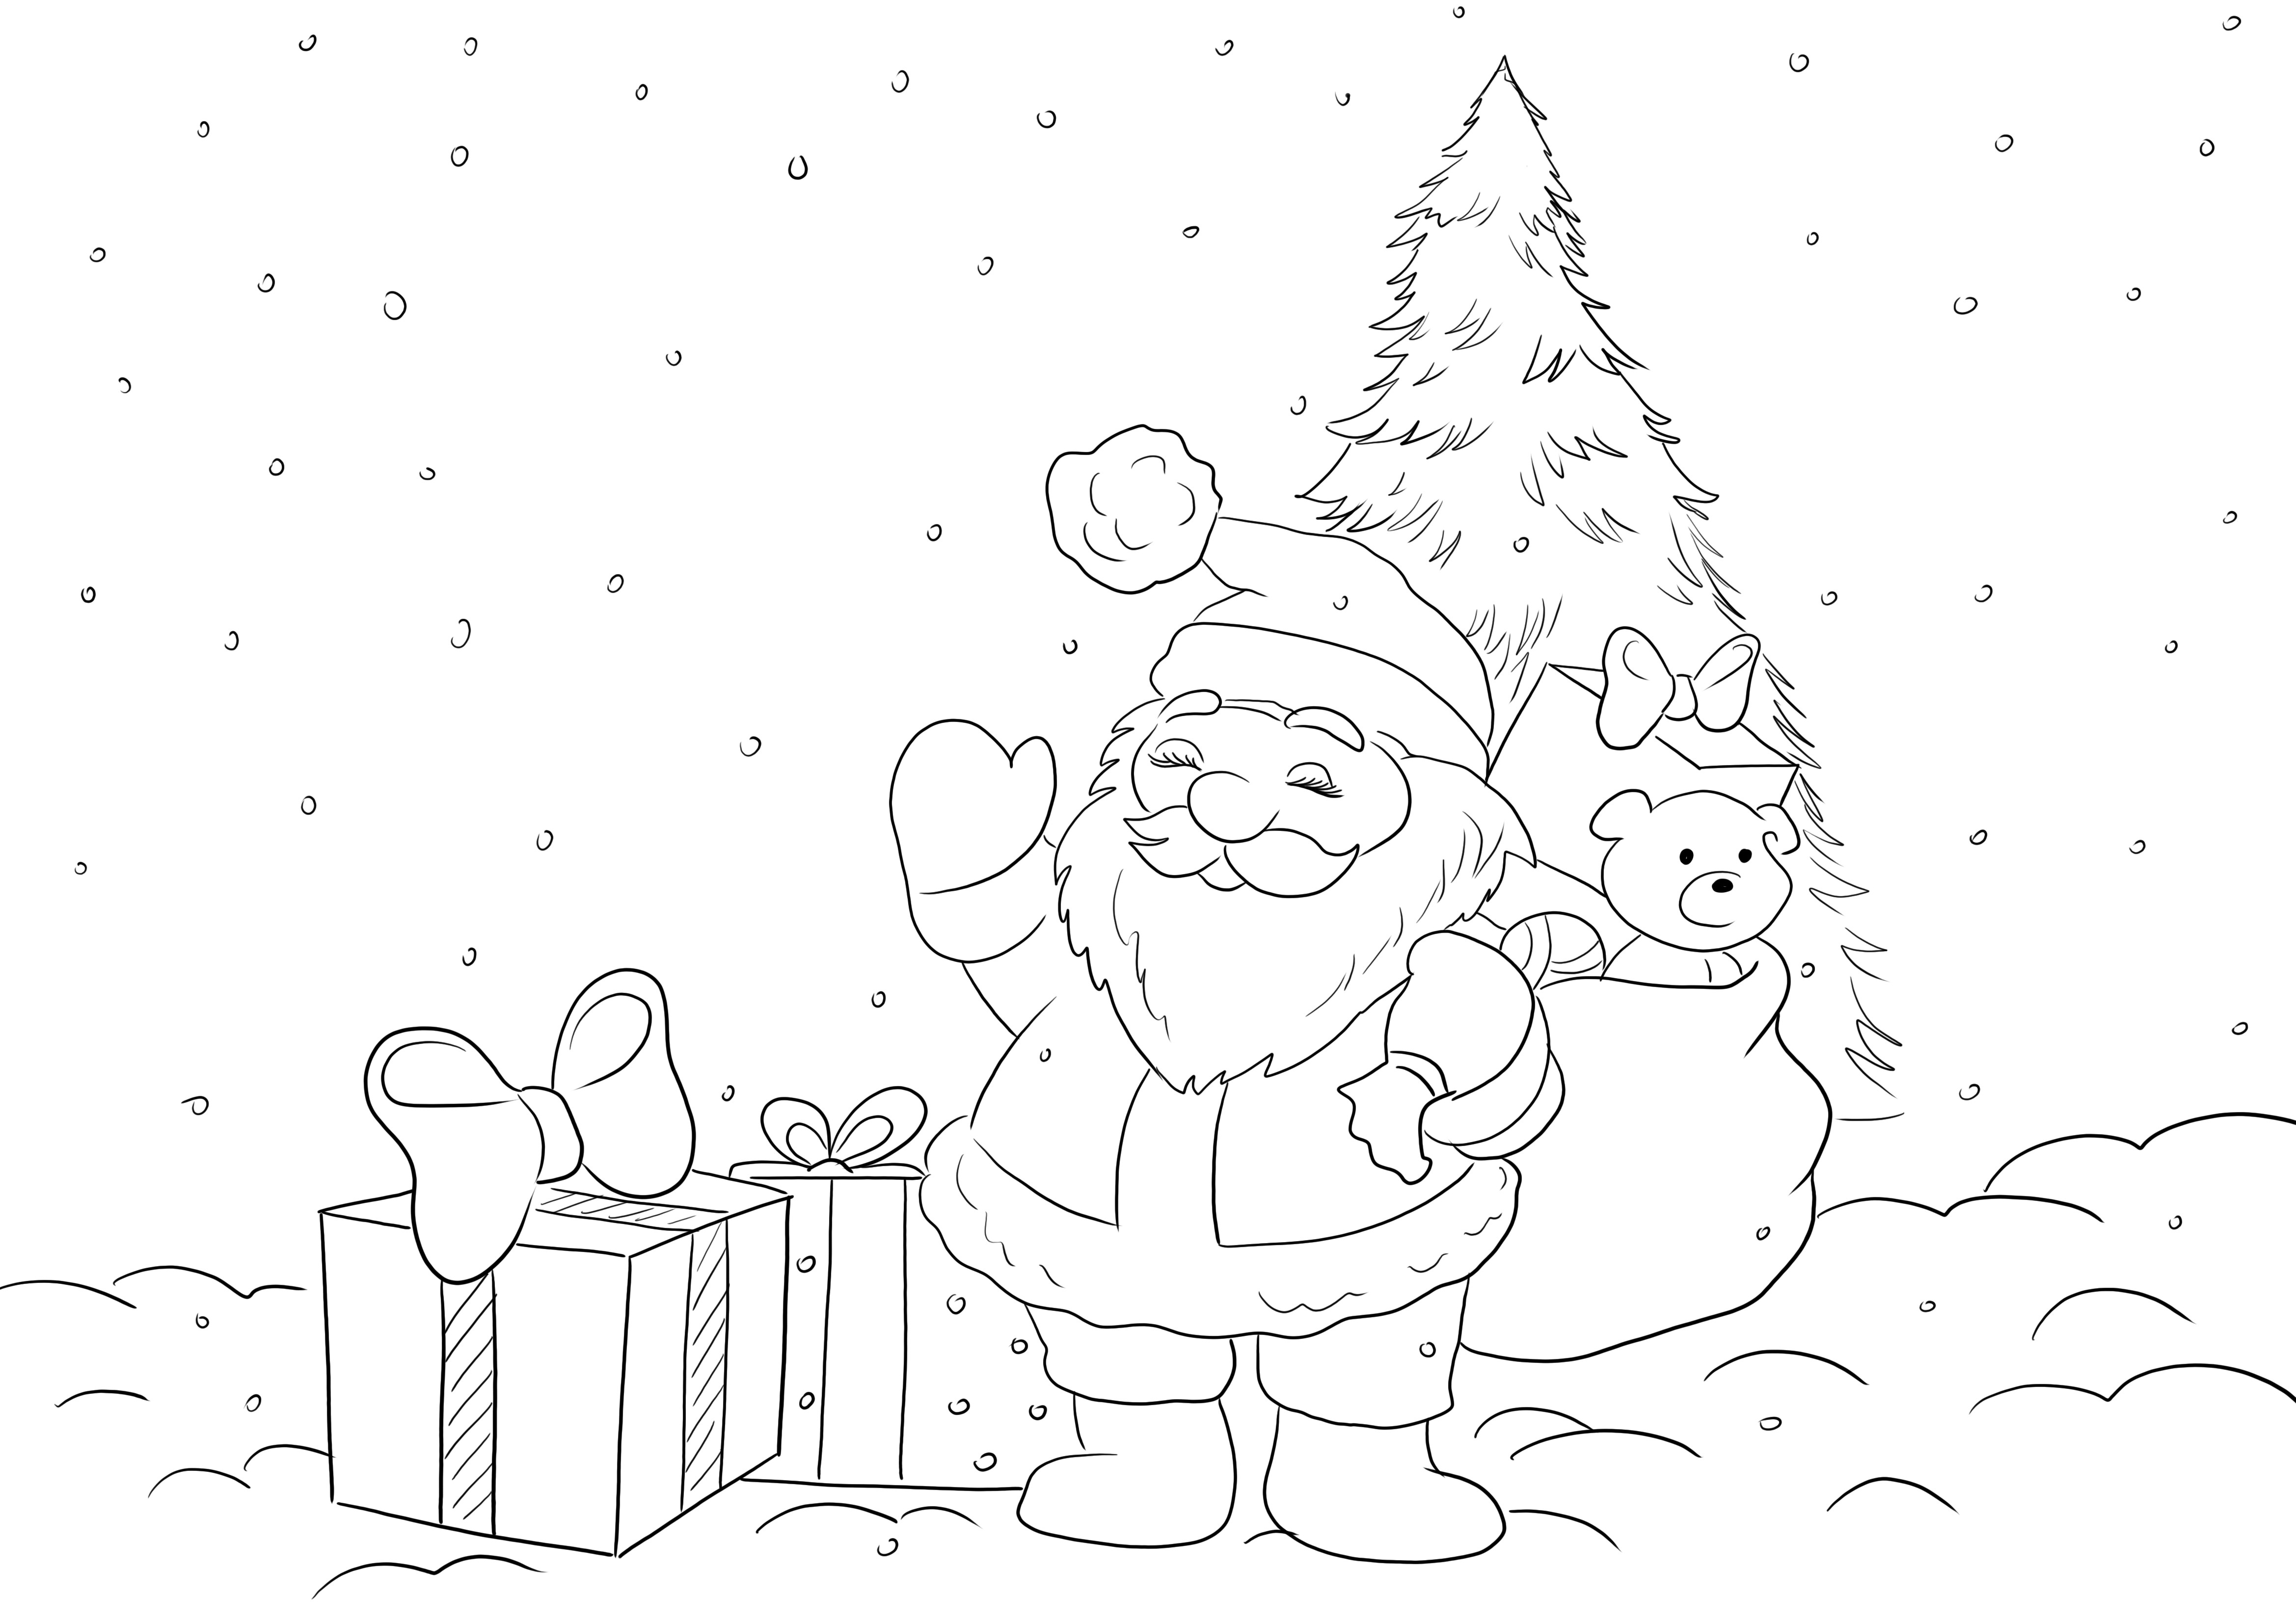 Gambar mewarnai gratis Santa dengan Hadiah menunggu semua anak untuk mewarnai dengan menyenangkan